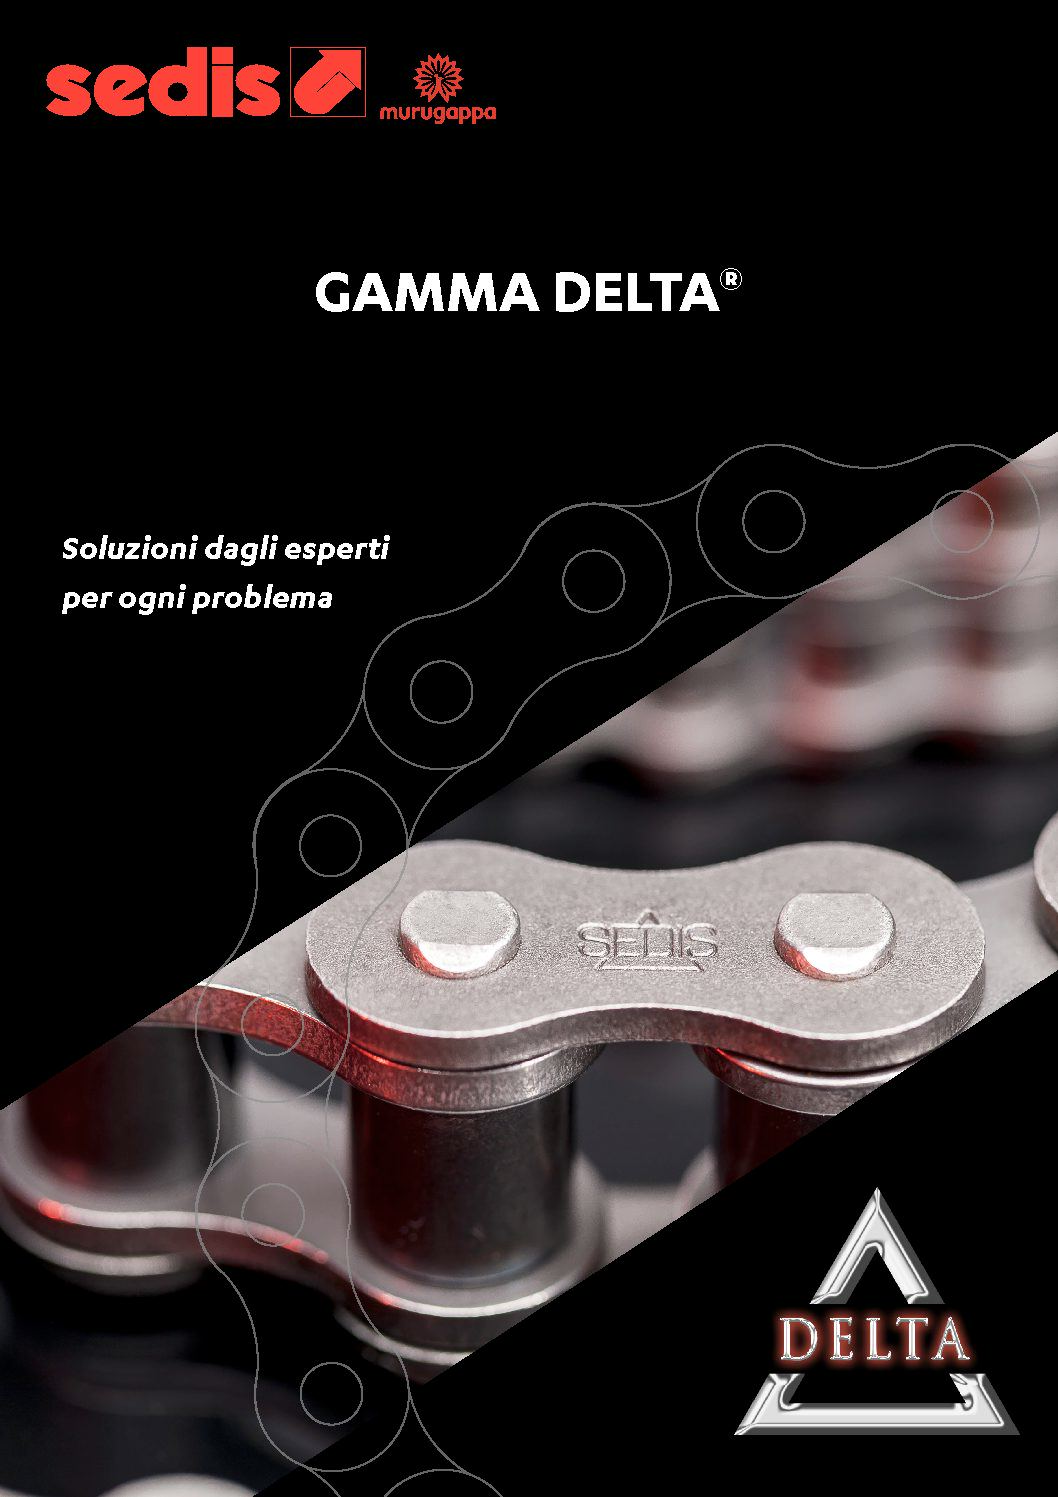 sedis-gamma-delta